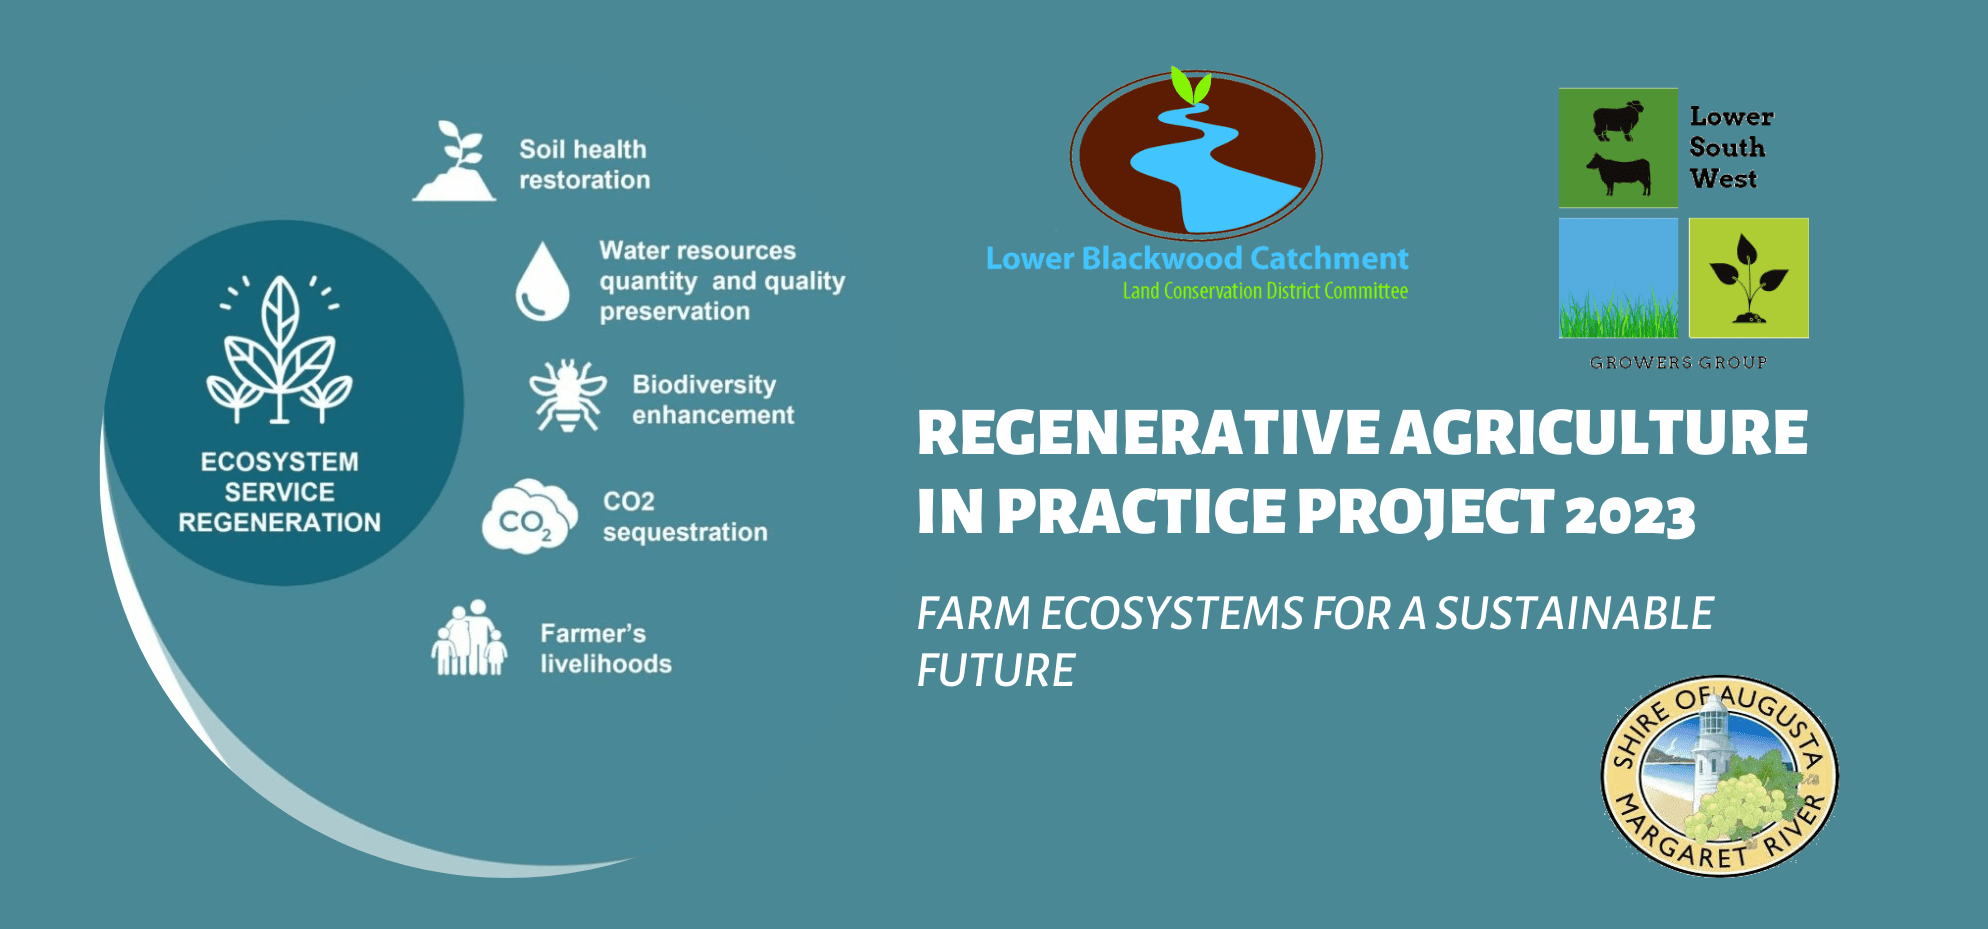 Regenerative Agriculture in Practice 2023